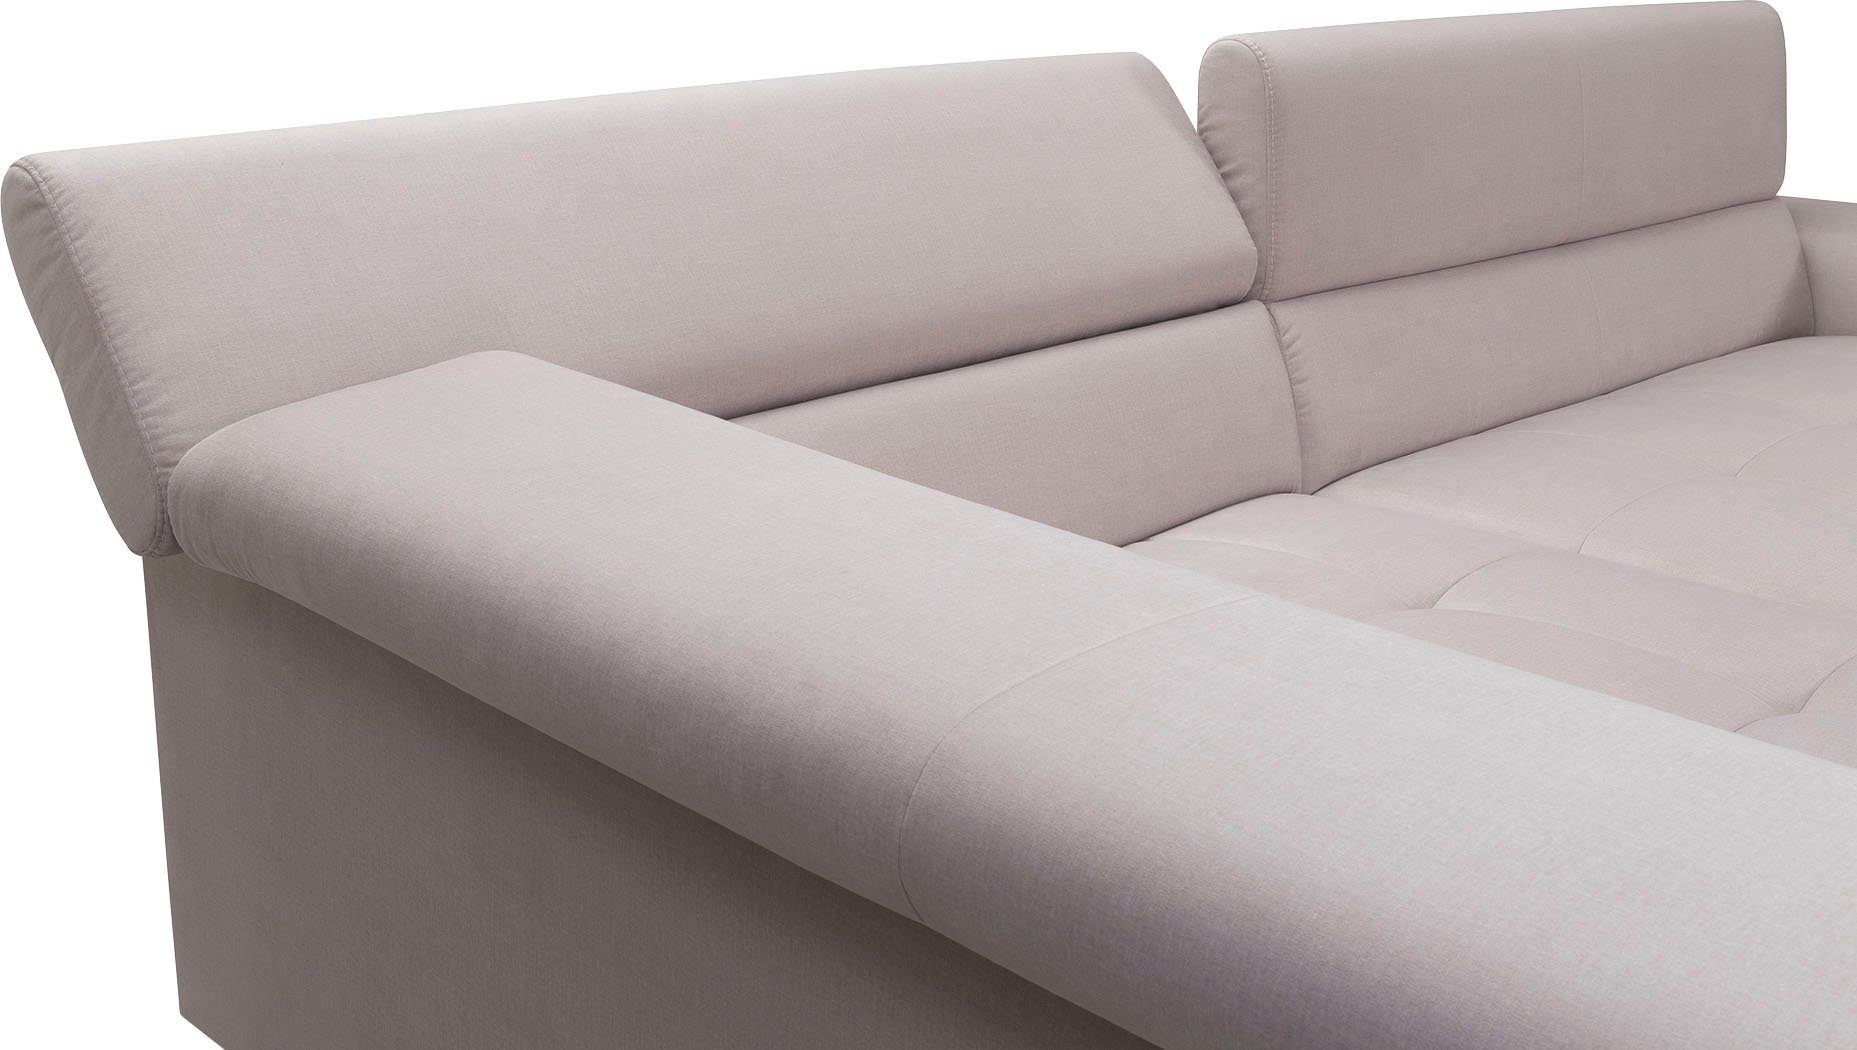 exxpo - sofa fashion Ecksofa, mit verstellbaren mit 3 Bettfunktion Kopfstützen, Kissen wahlweise und